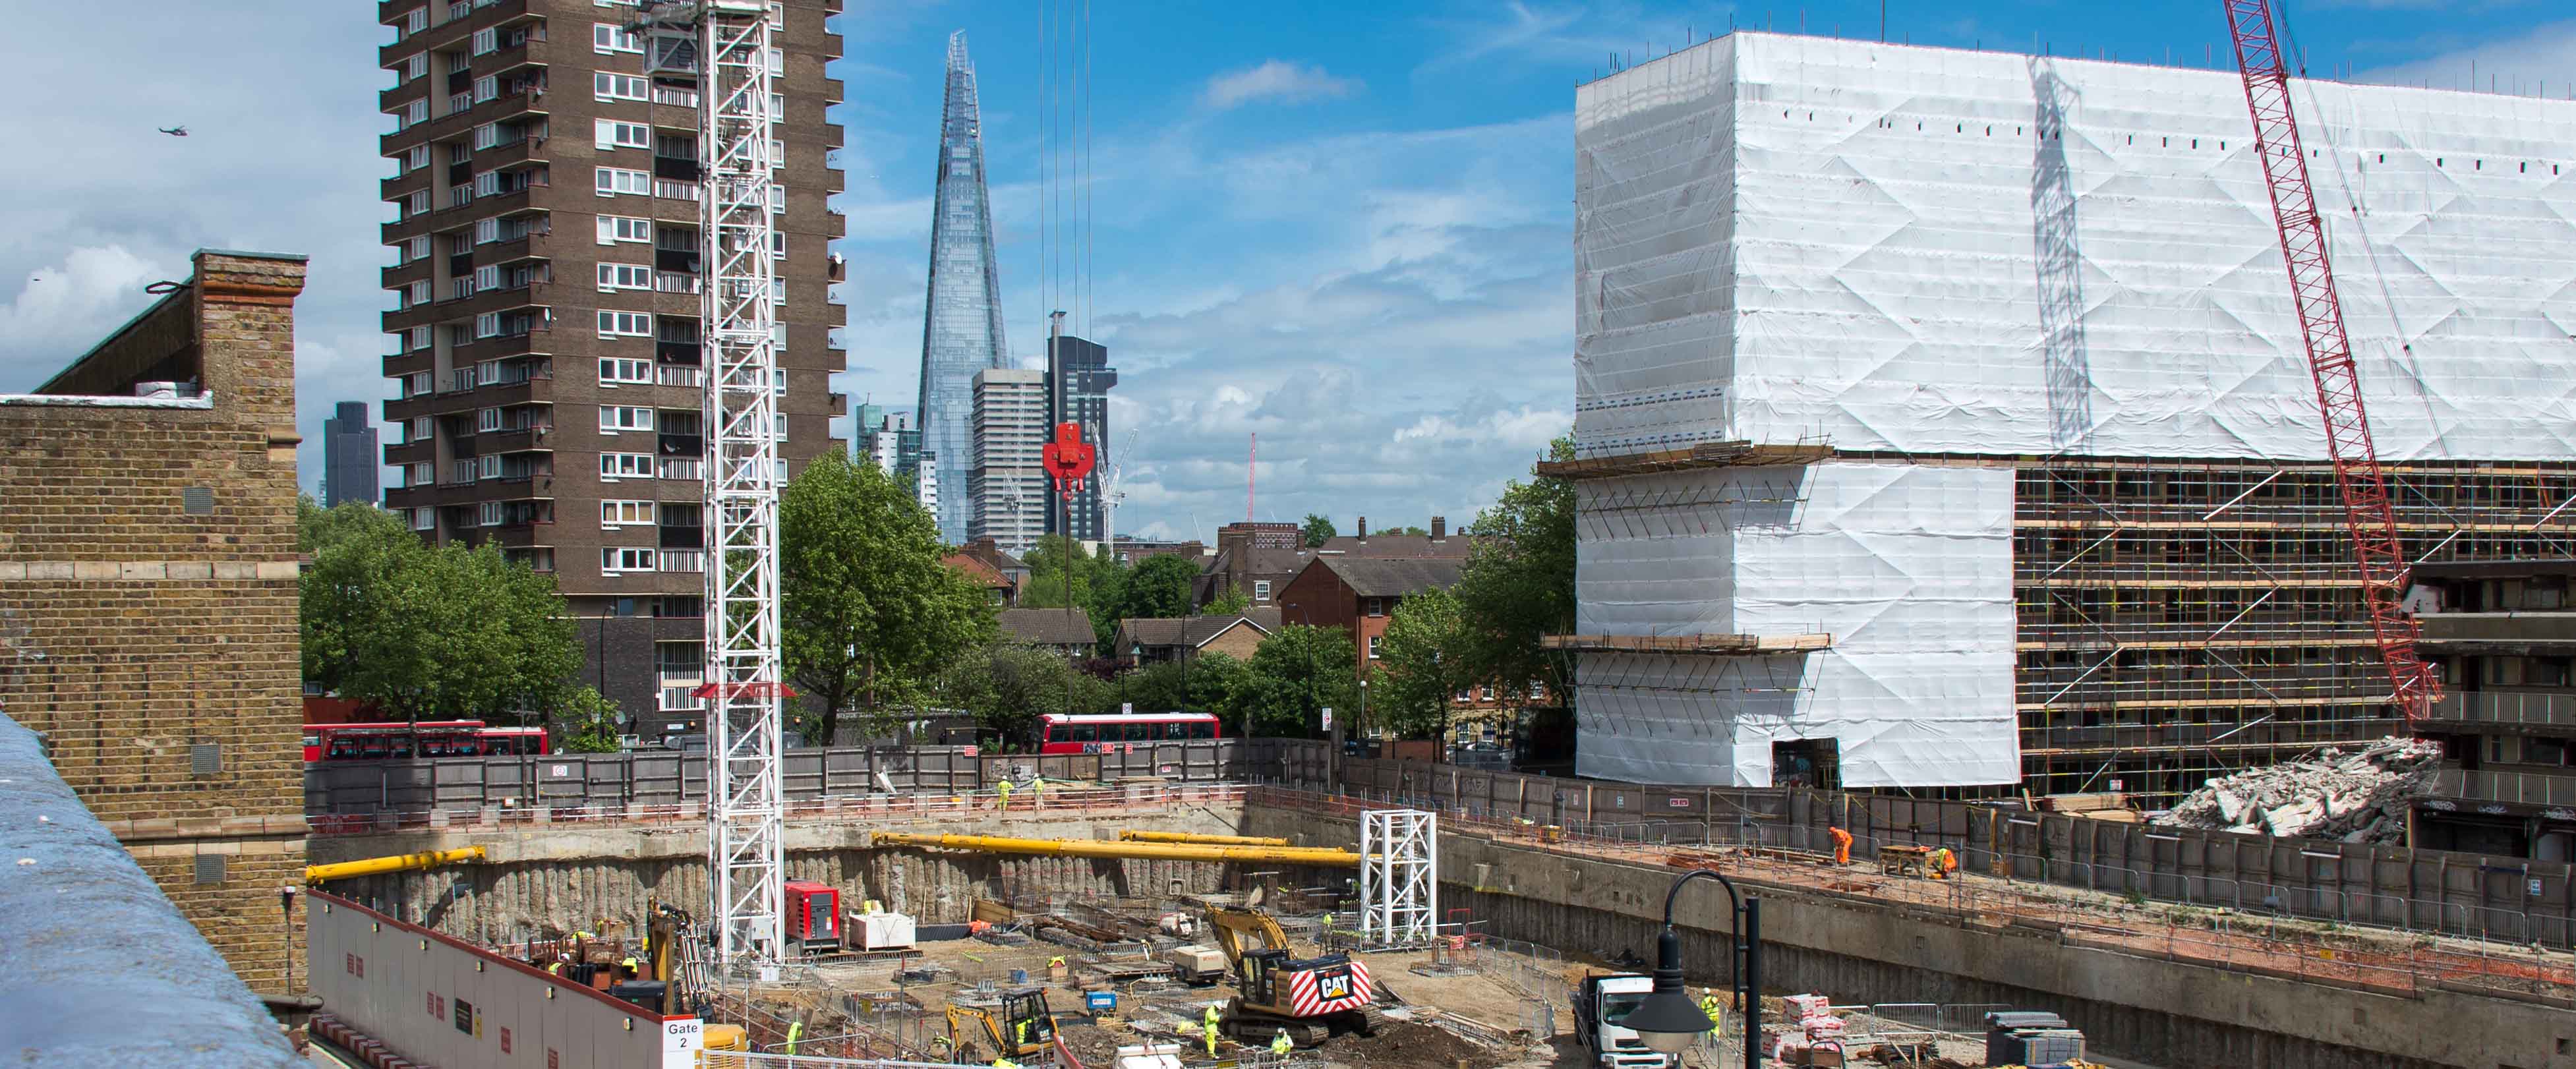 Mondes urbains britanniques / Londres, entre régénération urbaine et verticalisation